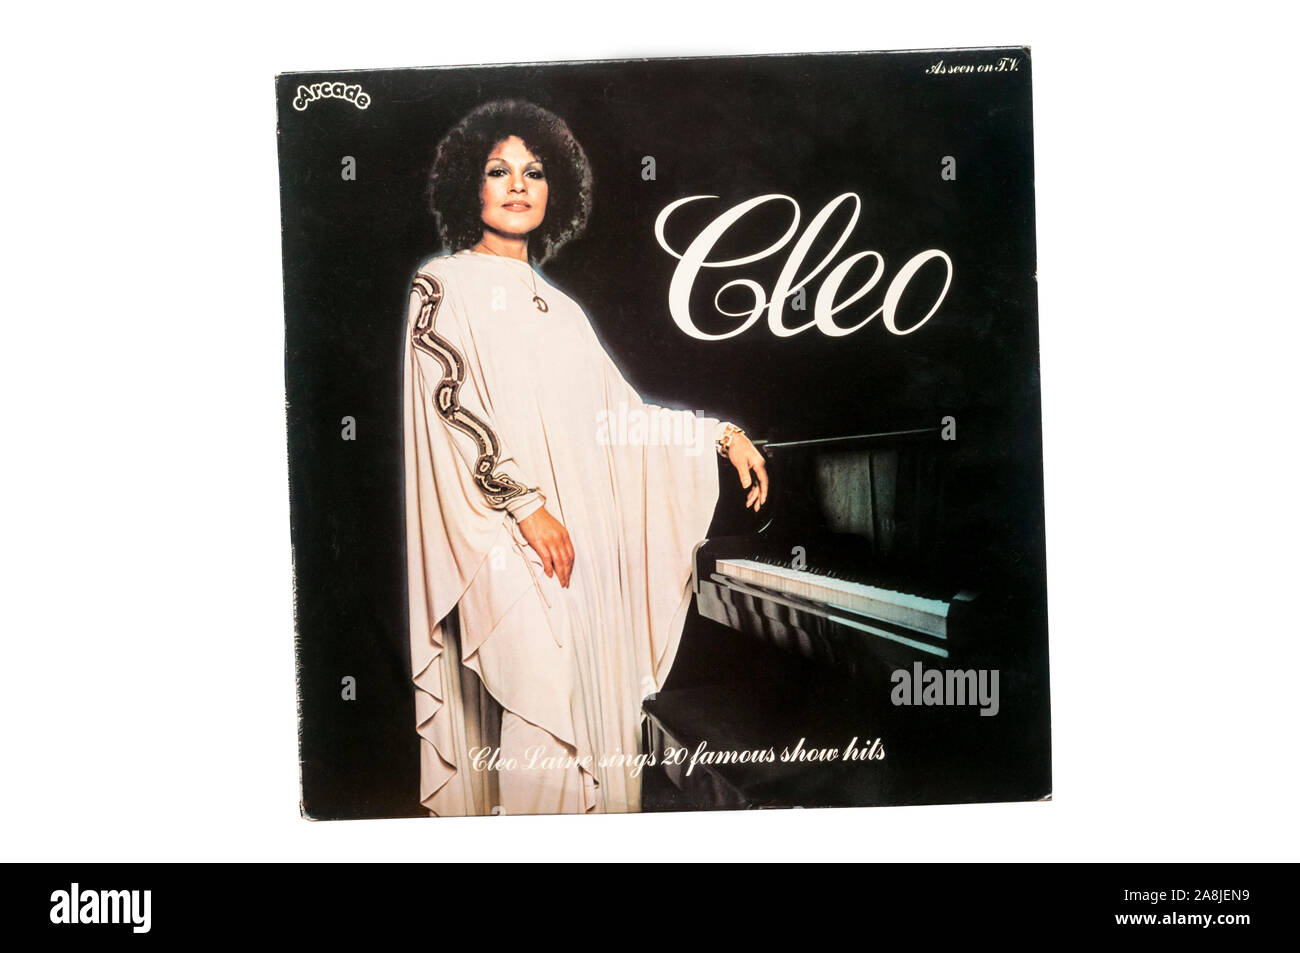 Cleo. Cleo Laine Singt 20 berühmten Hits. Im Jahr 1978 veröffentlicht. Stockfoto